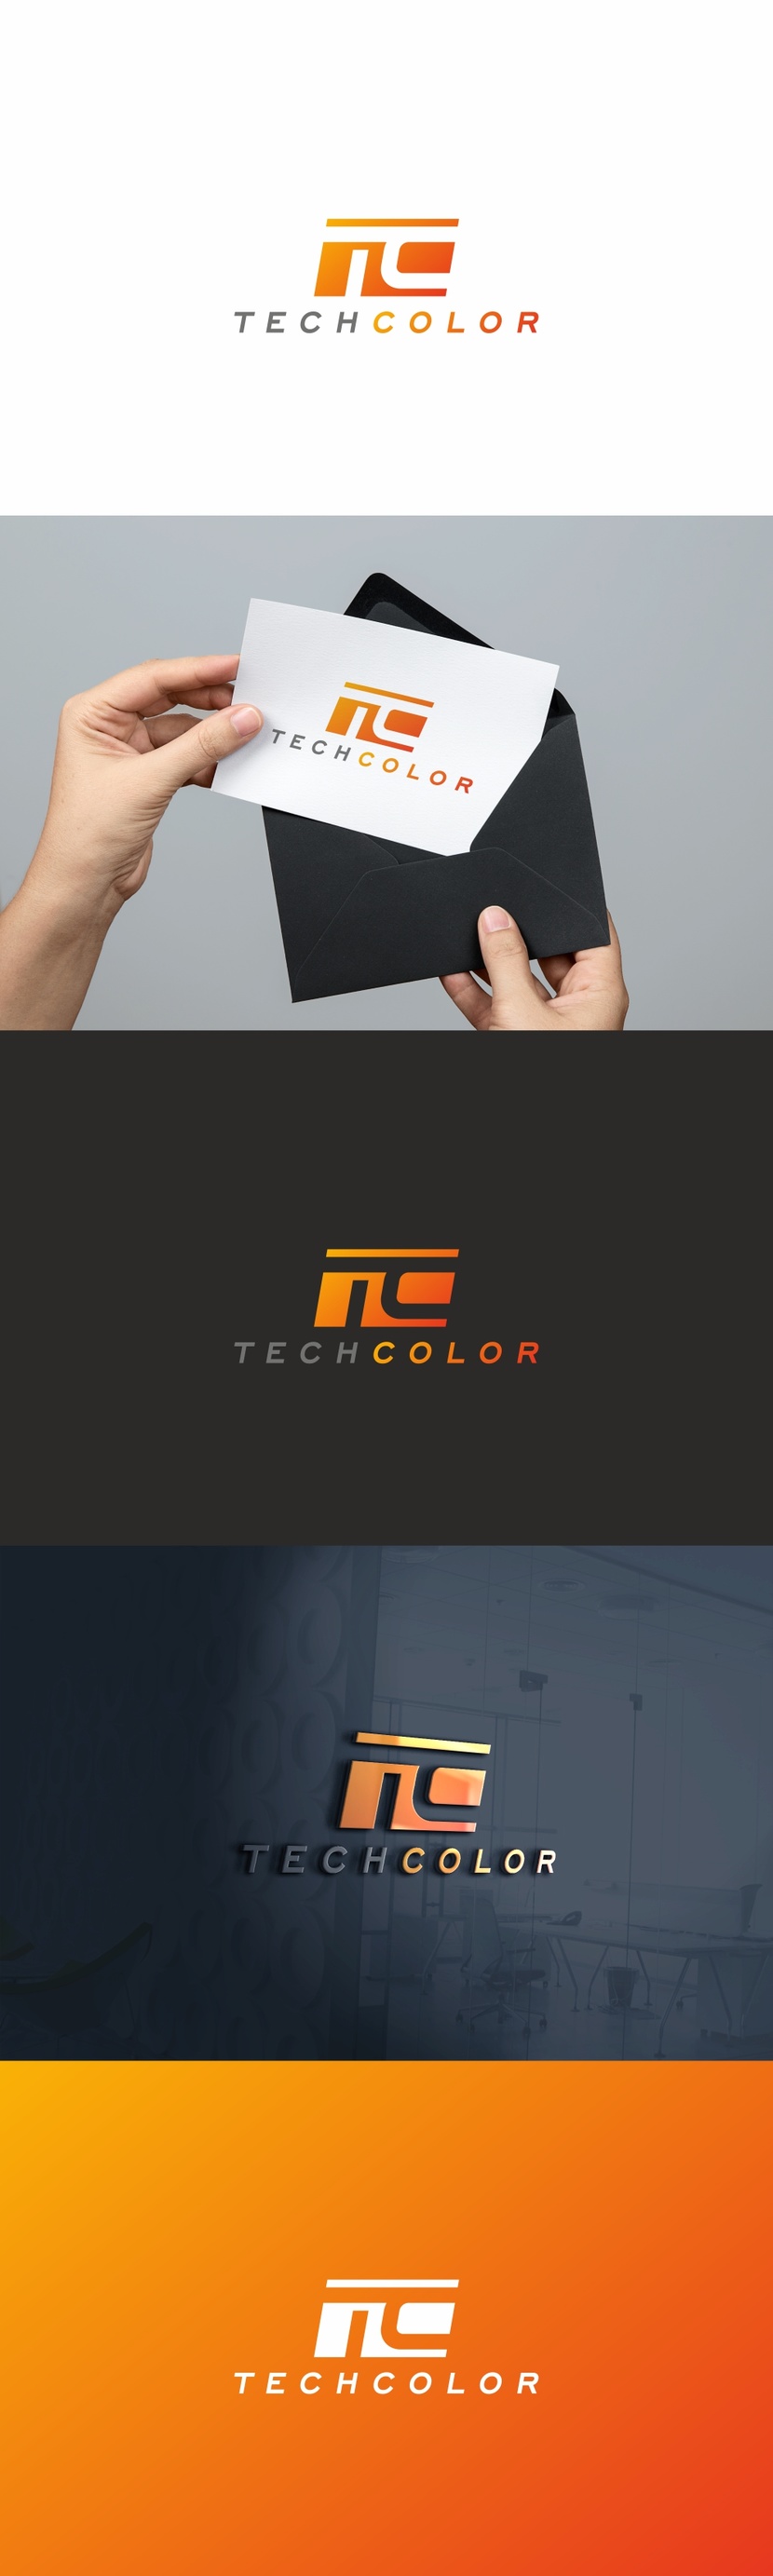 Разработка логотипа и фирменного стиля для компании TECHCOLOR  -  автор Андрей Мартынович